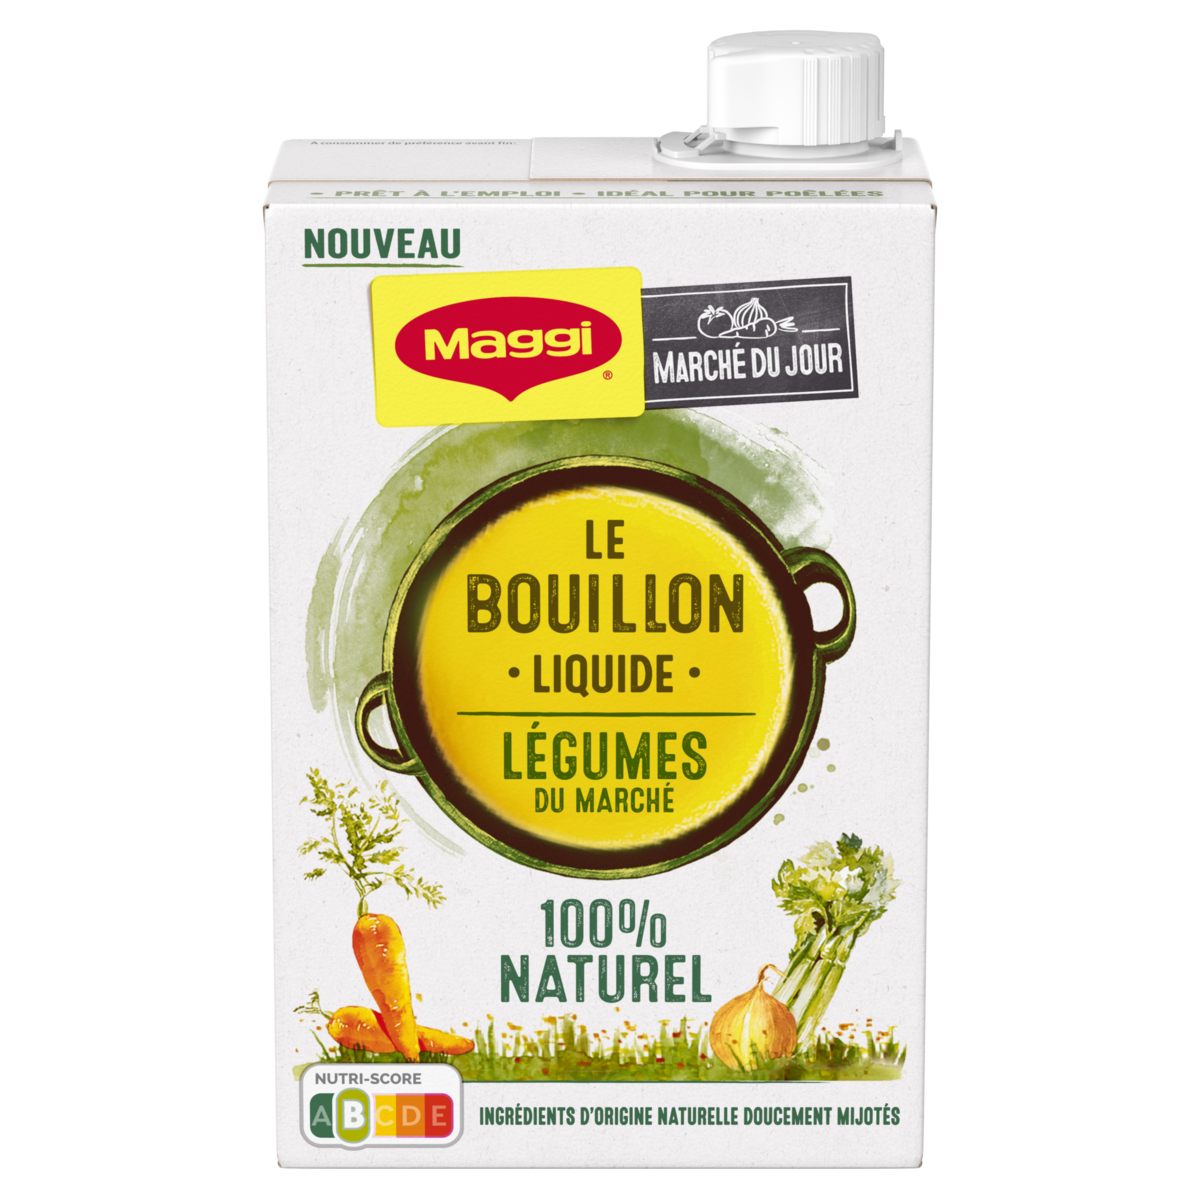 MAGGI Bouillon de légumes liquide 100% naturel 400g